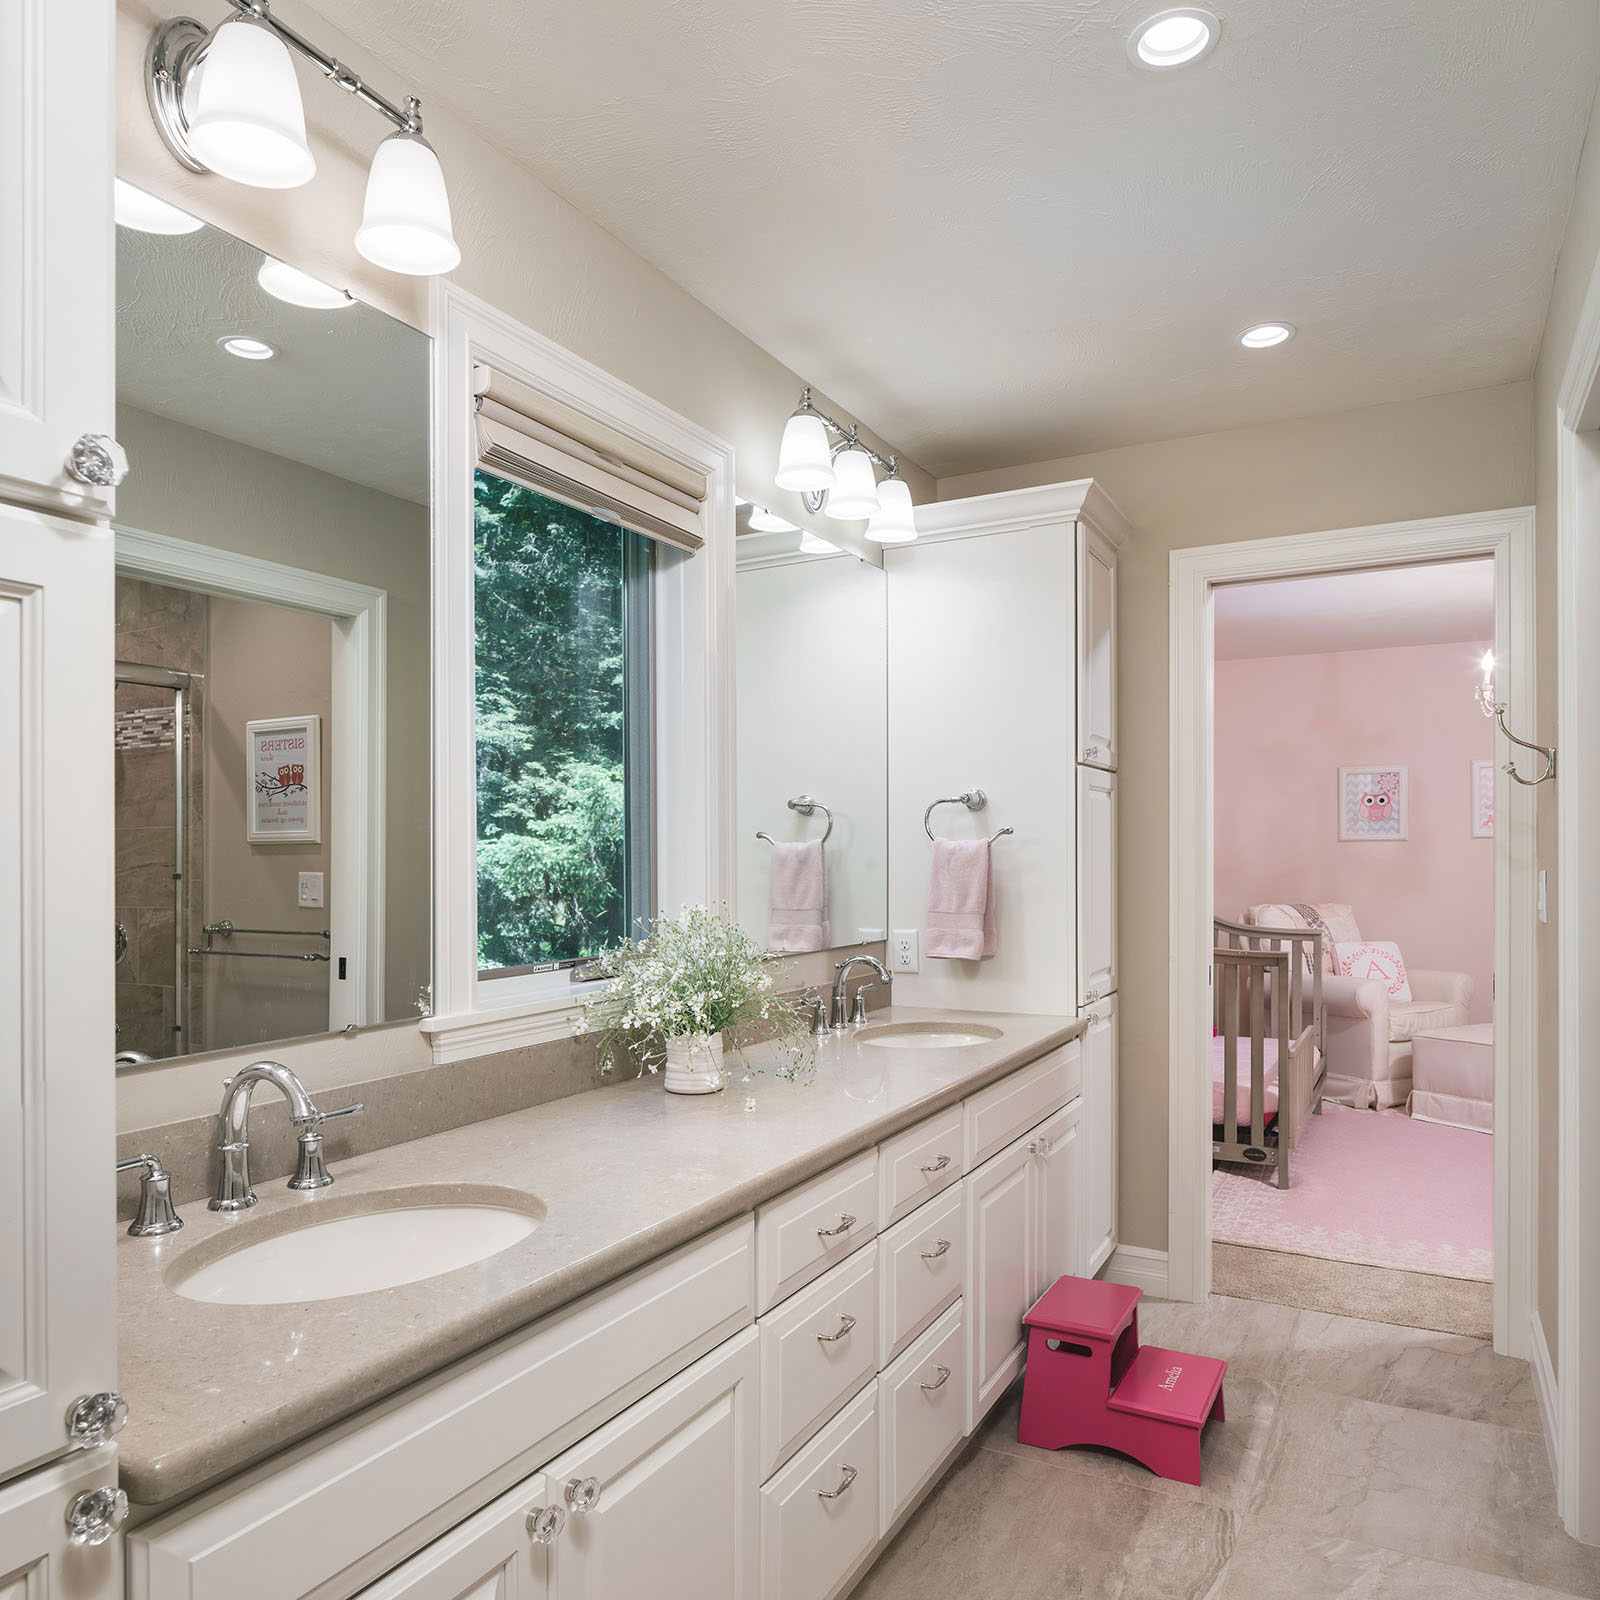 bathroom remodel - Henderer Design + Build, Corvallis OR